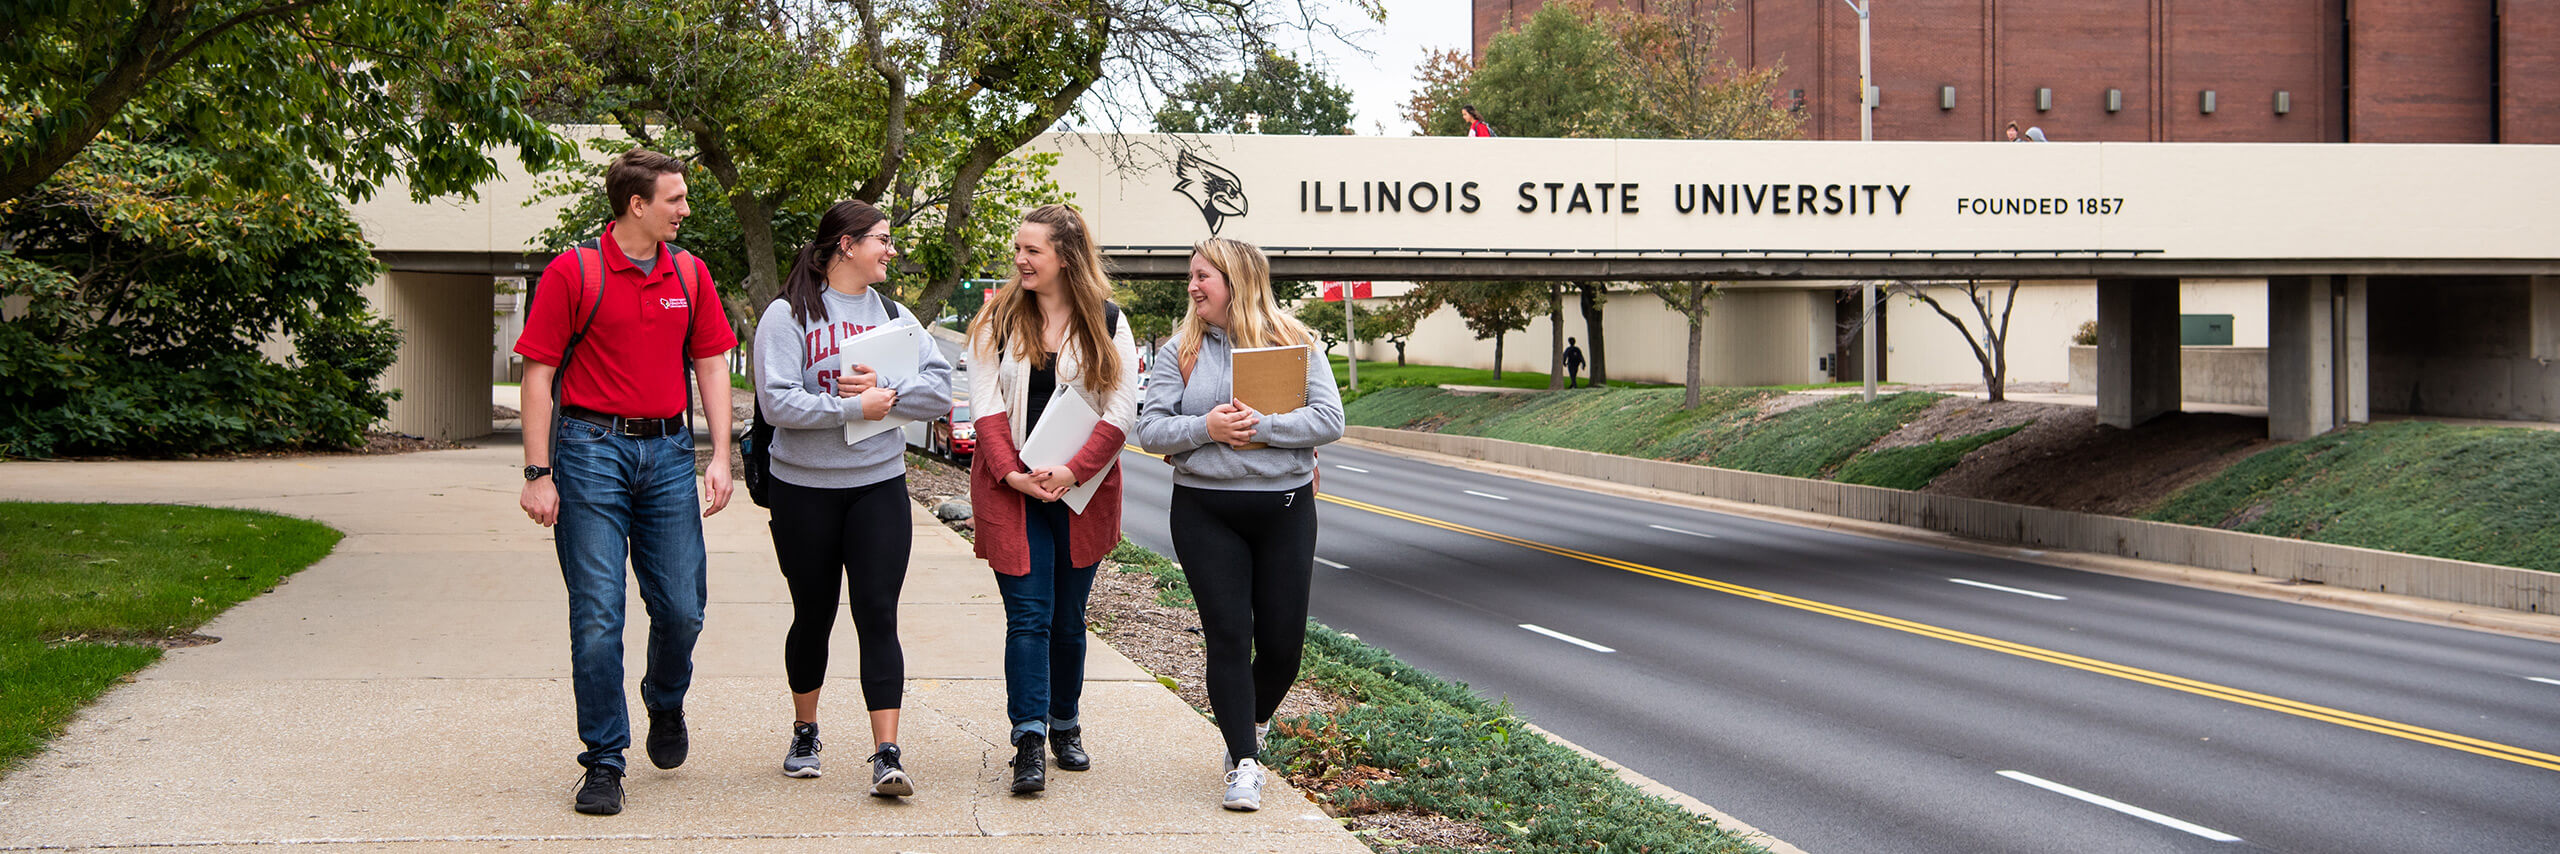 四名伊利诺伊州立大学的学生走在学院大道大桥前的小路上。